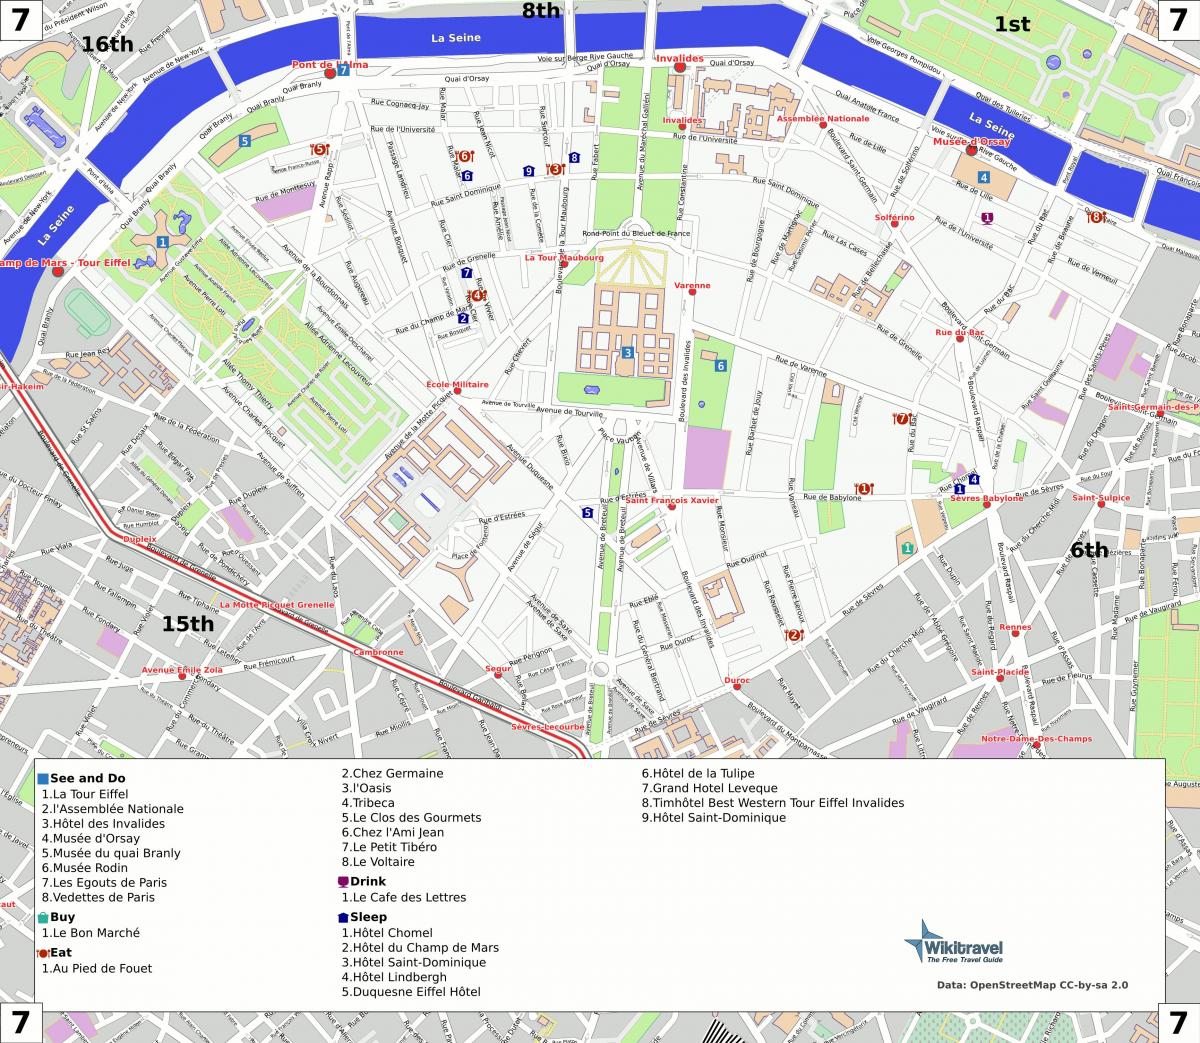 แผนที่ของ 7 arrondissement ของปารีส